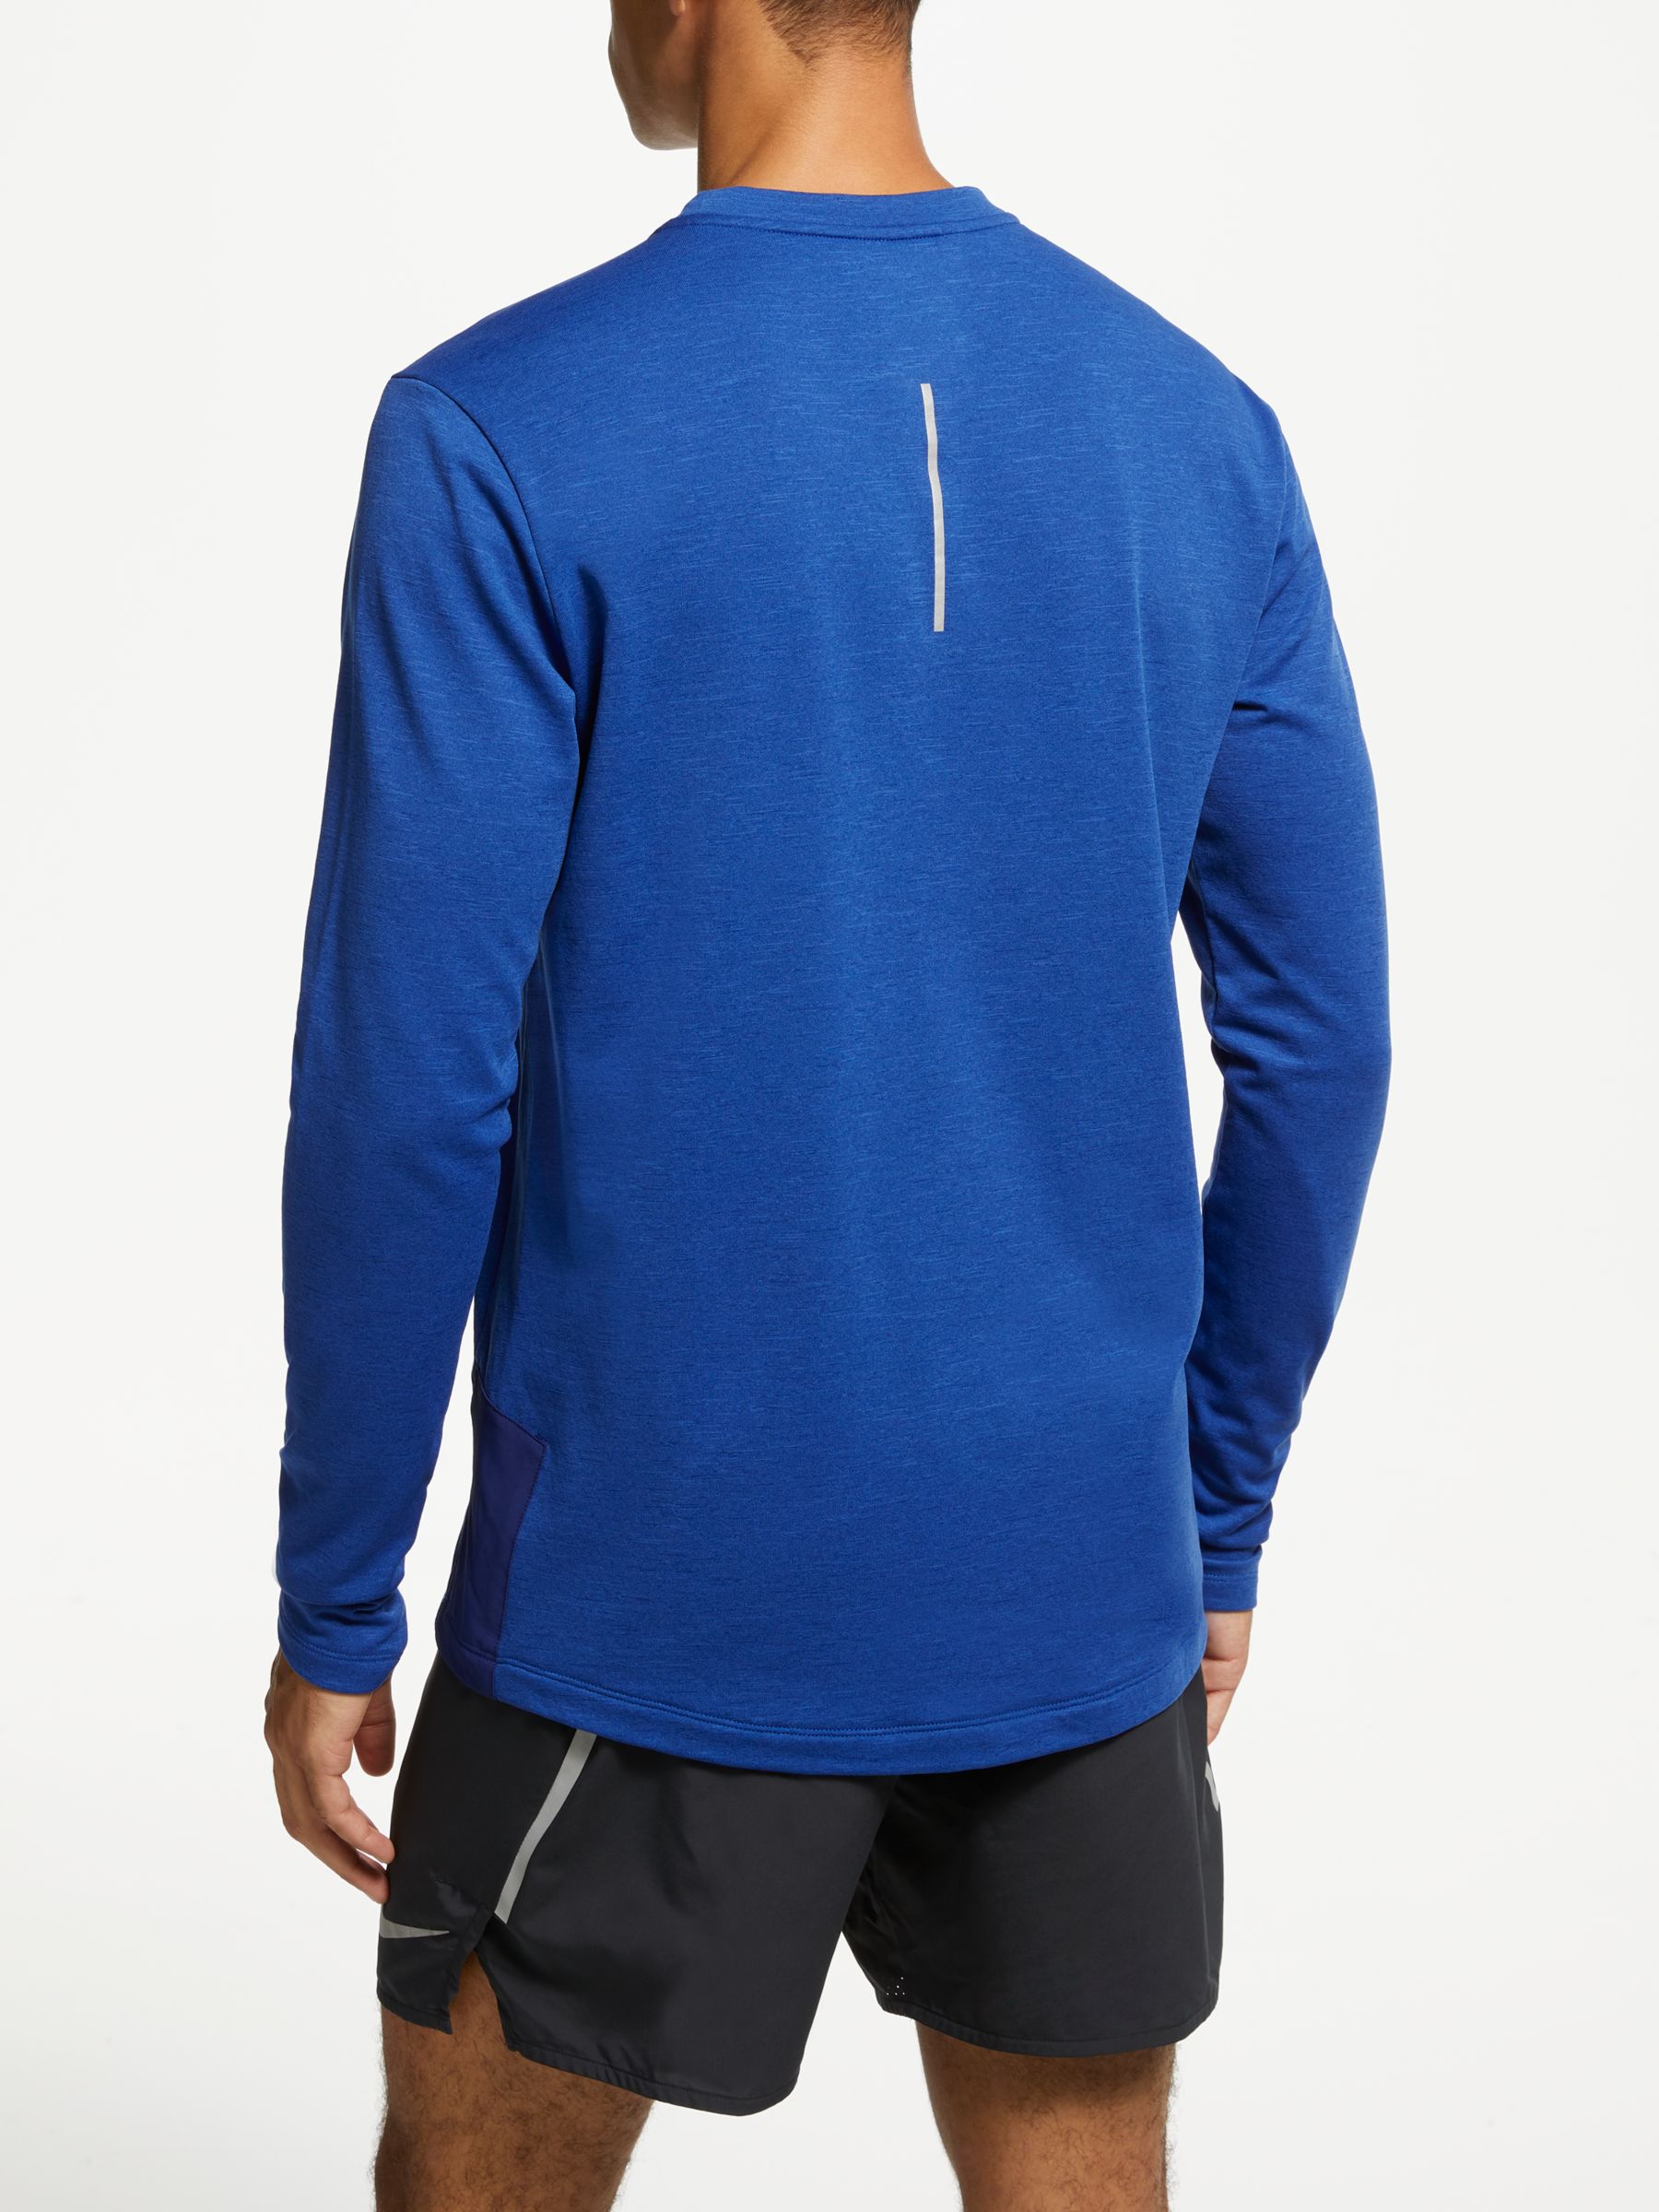 Patronise Stifte bekendtskab Bevægelig Nike Therma Sphere Element 2.0 Long Sleeve Running Top, Blue Void, S